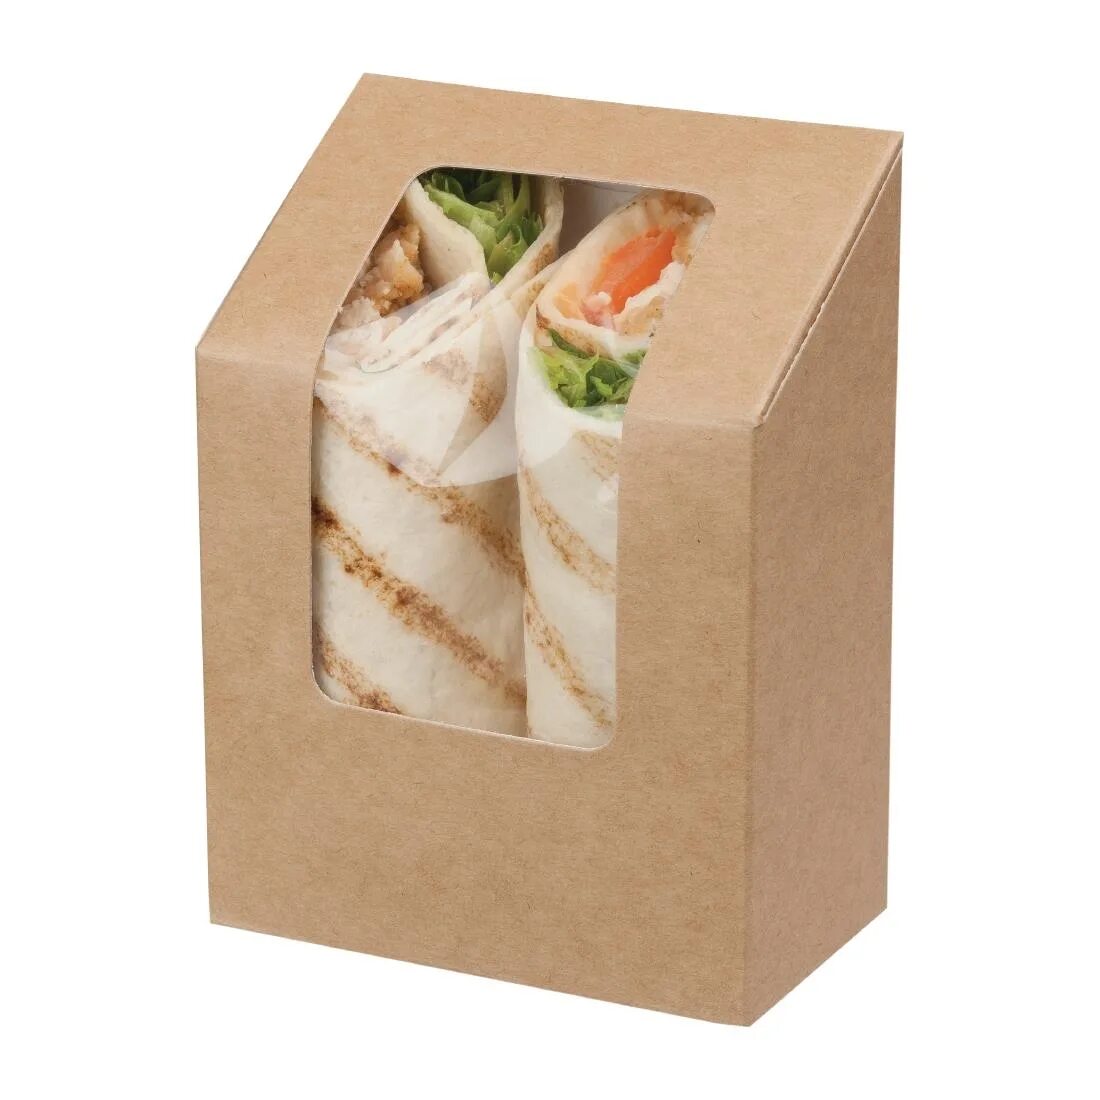 Сэндвич в упаковке. Коробка для сэндвичей. Красивая упаковка для сэндвичей. Крафтовая упаковка для сэндвичей. Ламинированная коробка